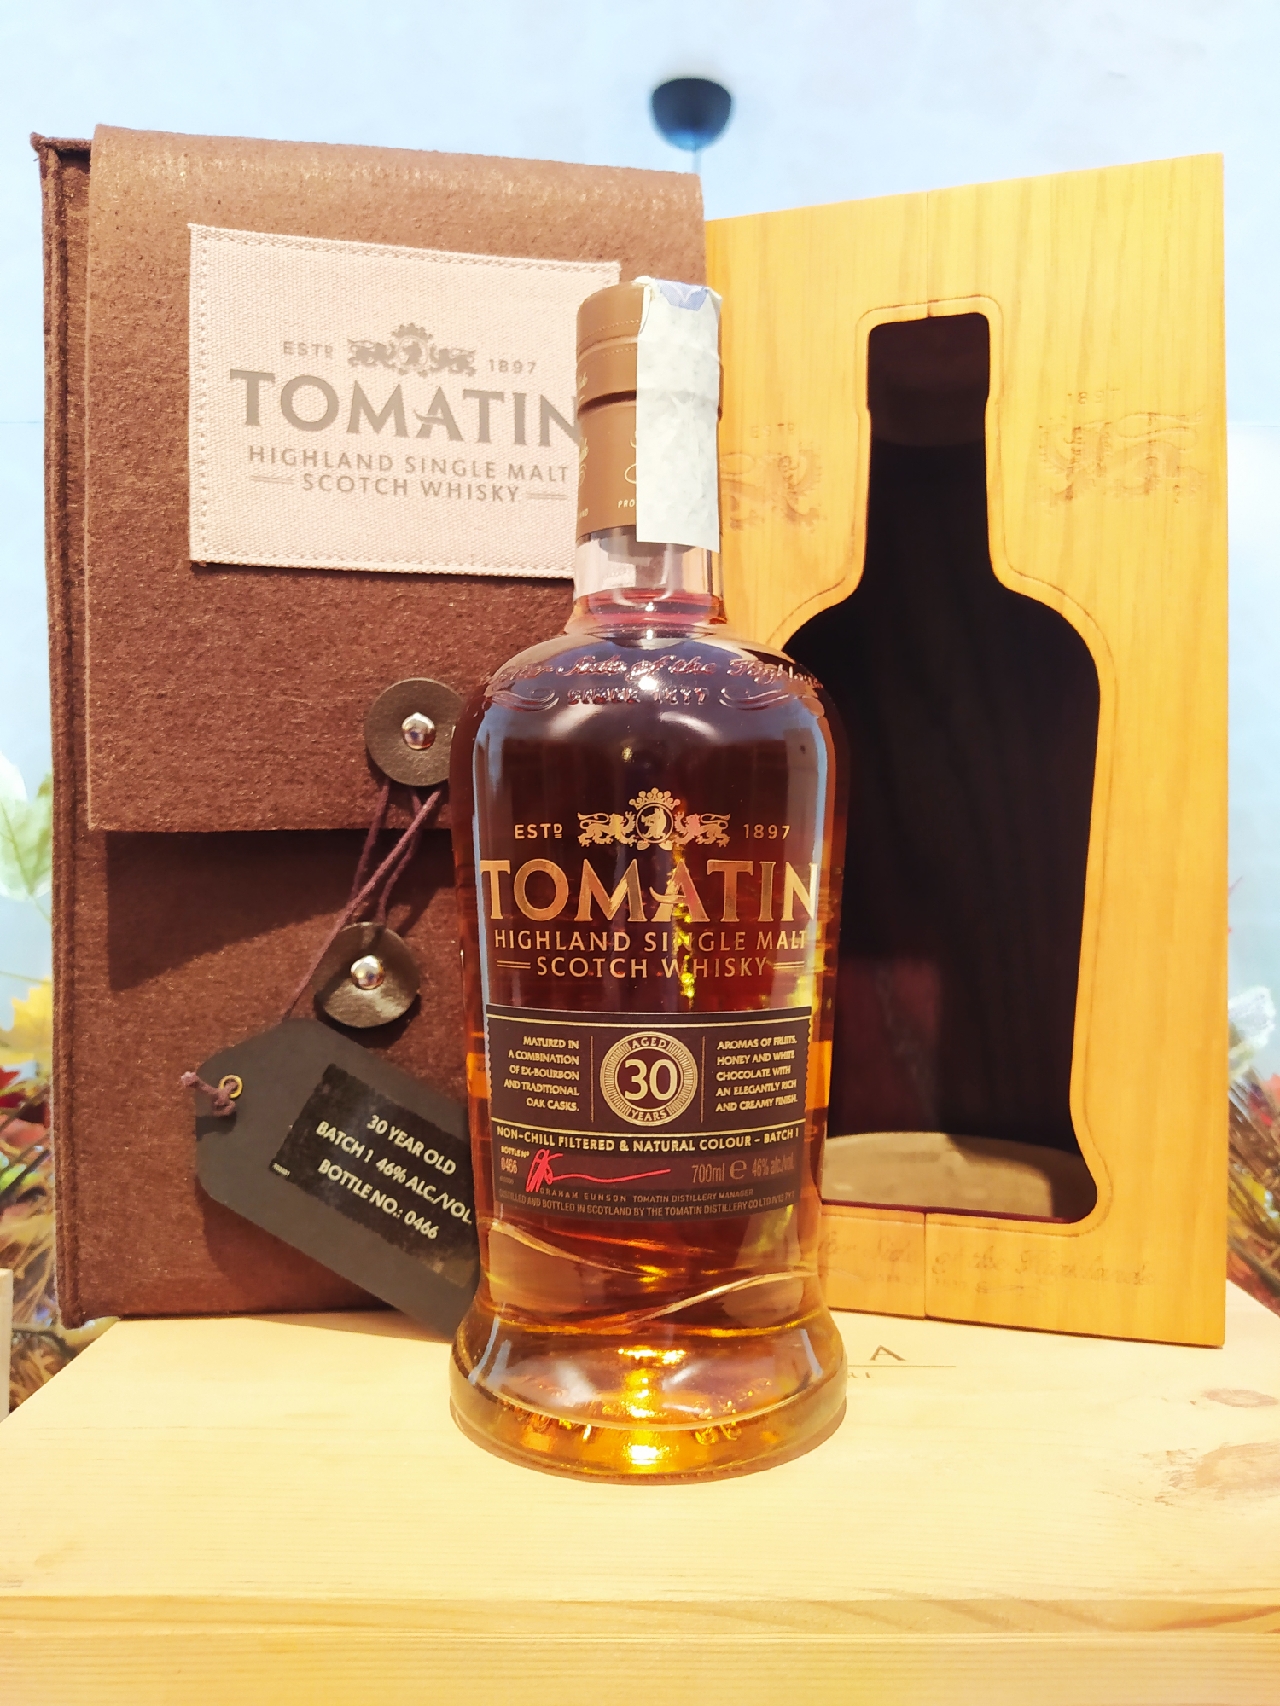 Tomatin Highland Single Malt Scotch Whisky 30 YO Batch 1